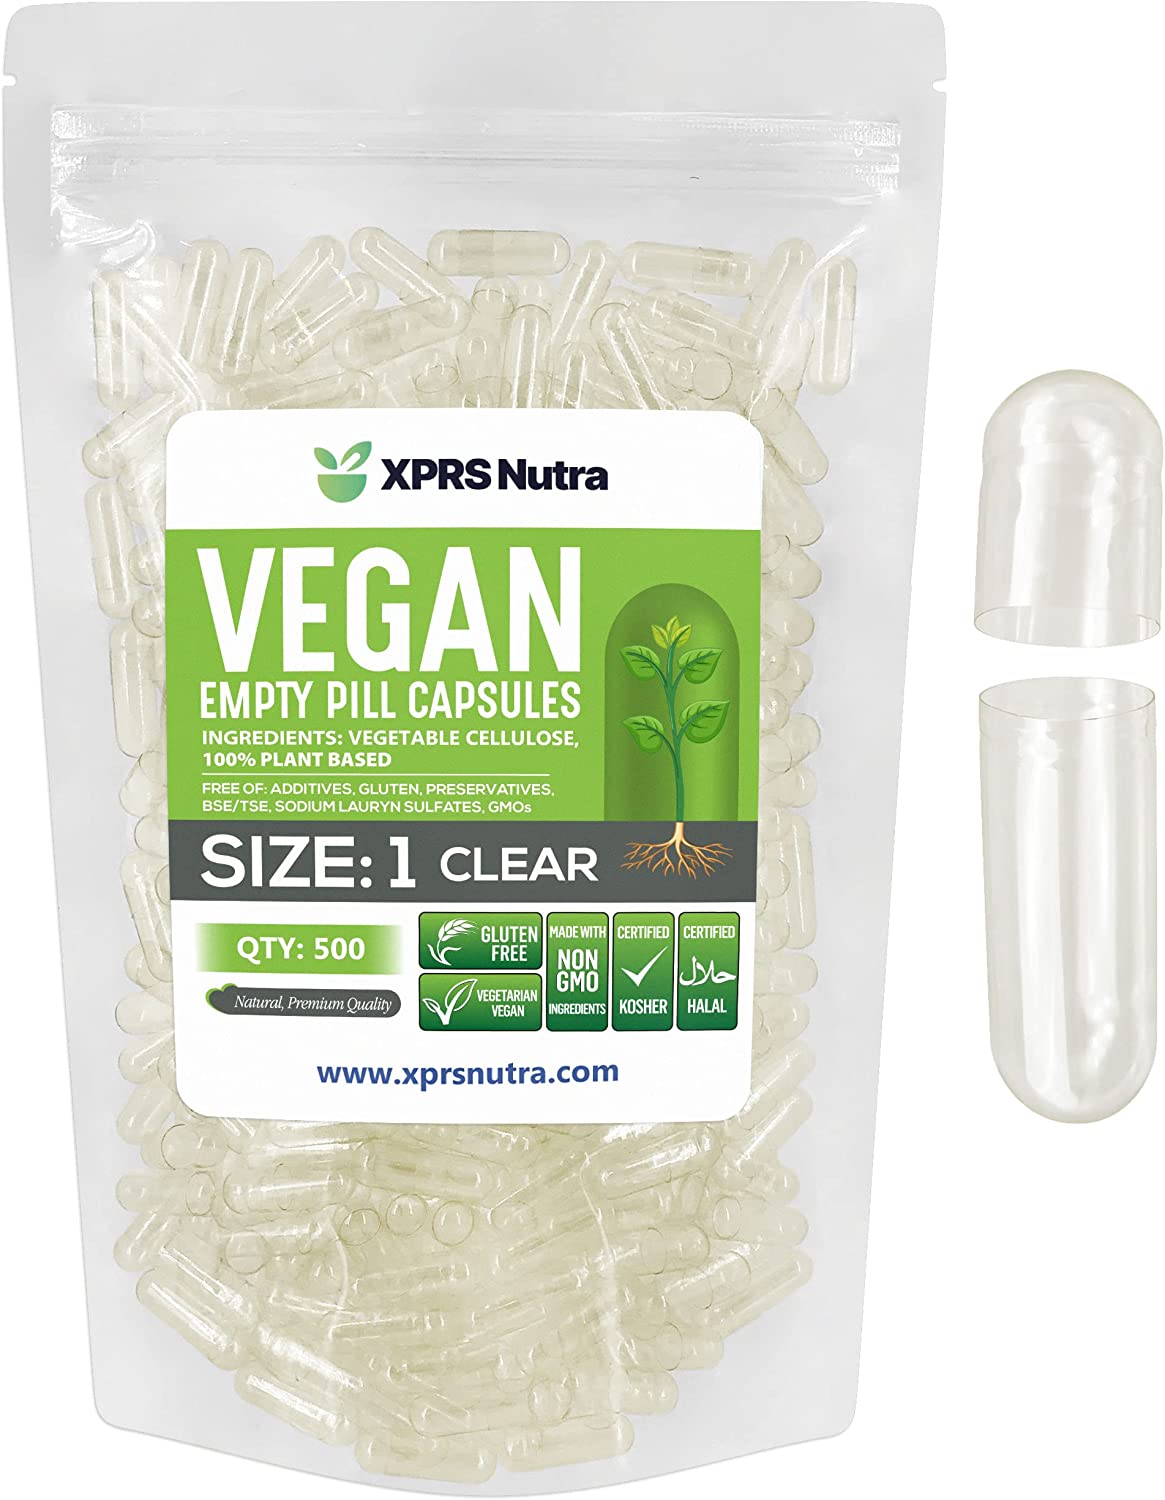 Size 1 Empty Vegan Capsules